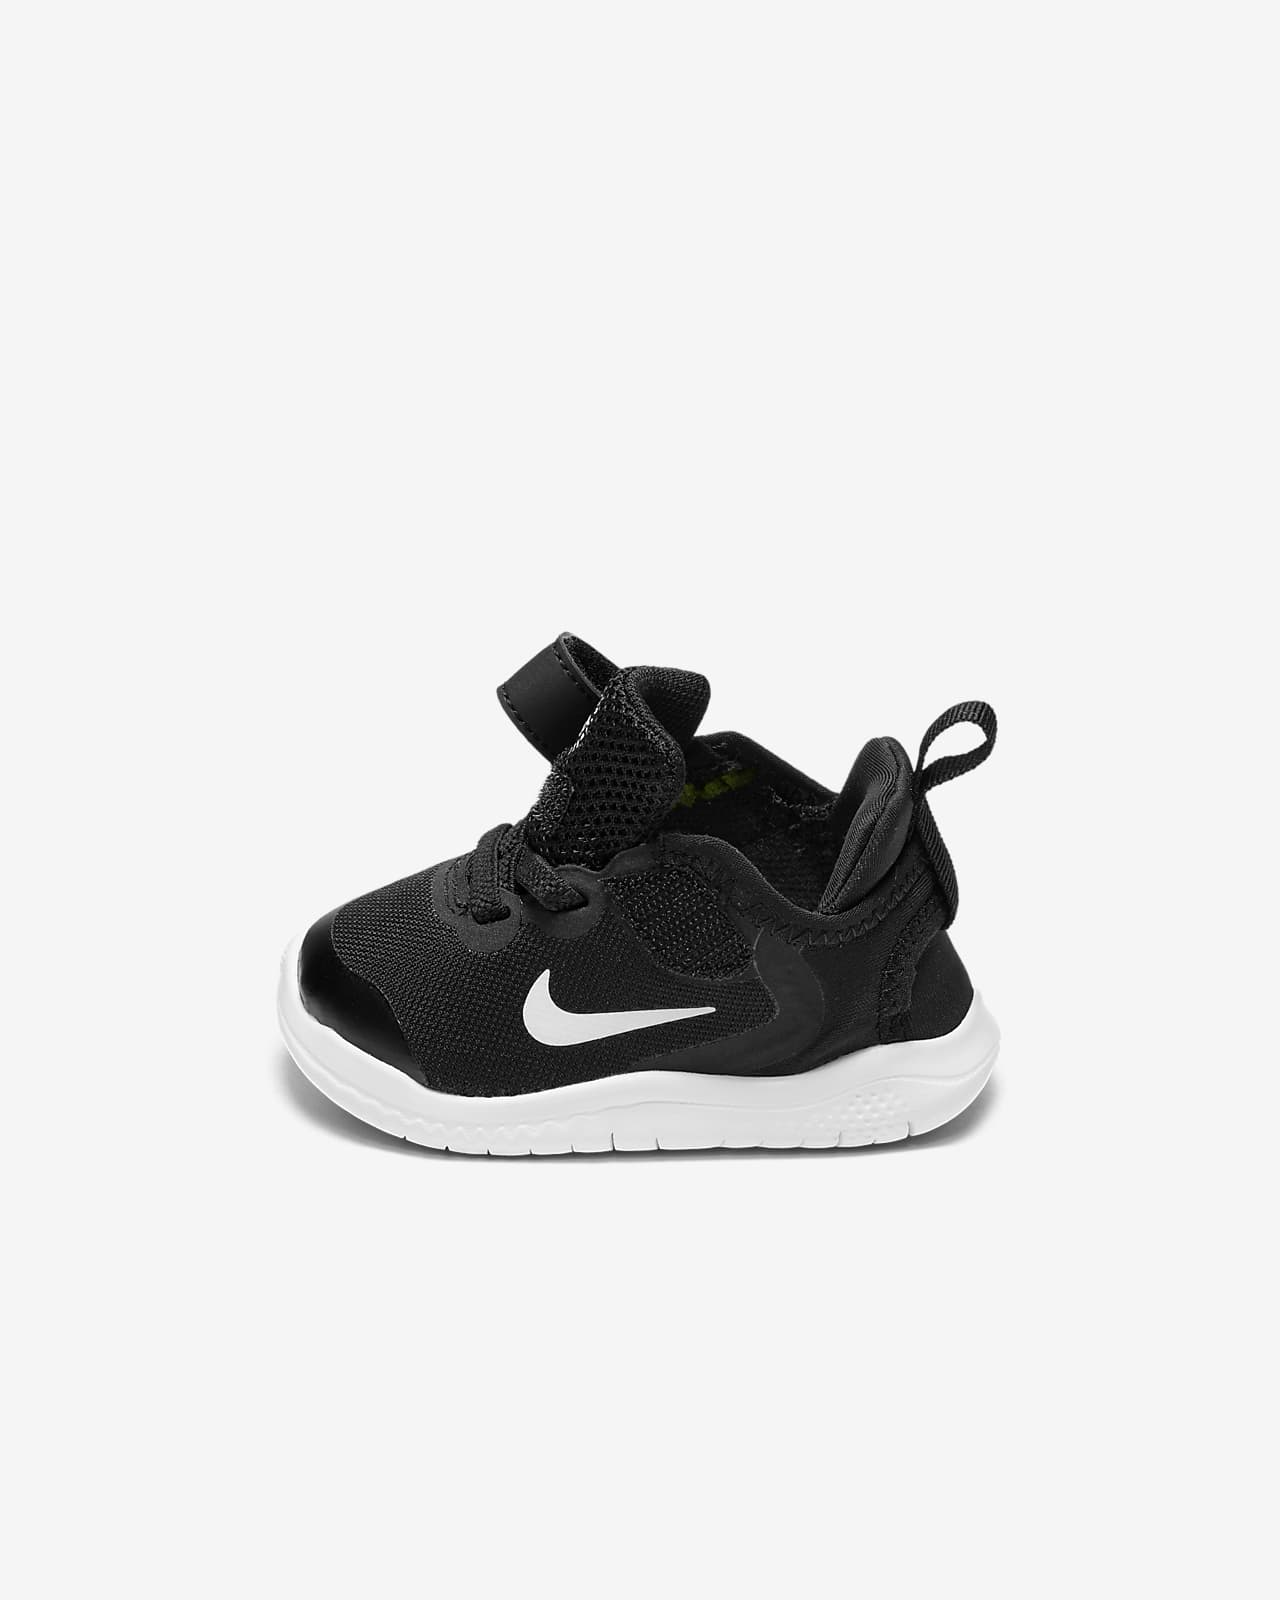 Nike Free RN 2018 Infant/Toddler Shoe 